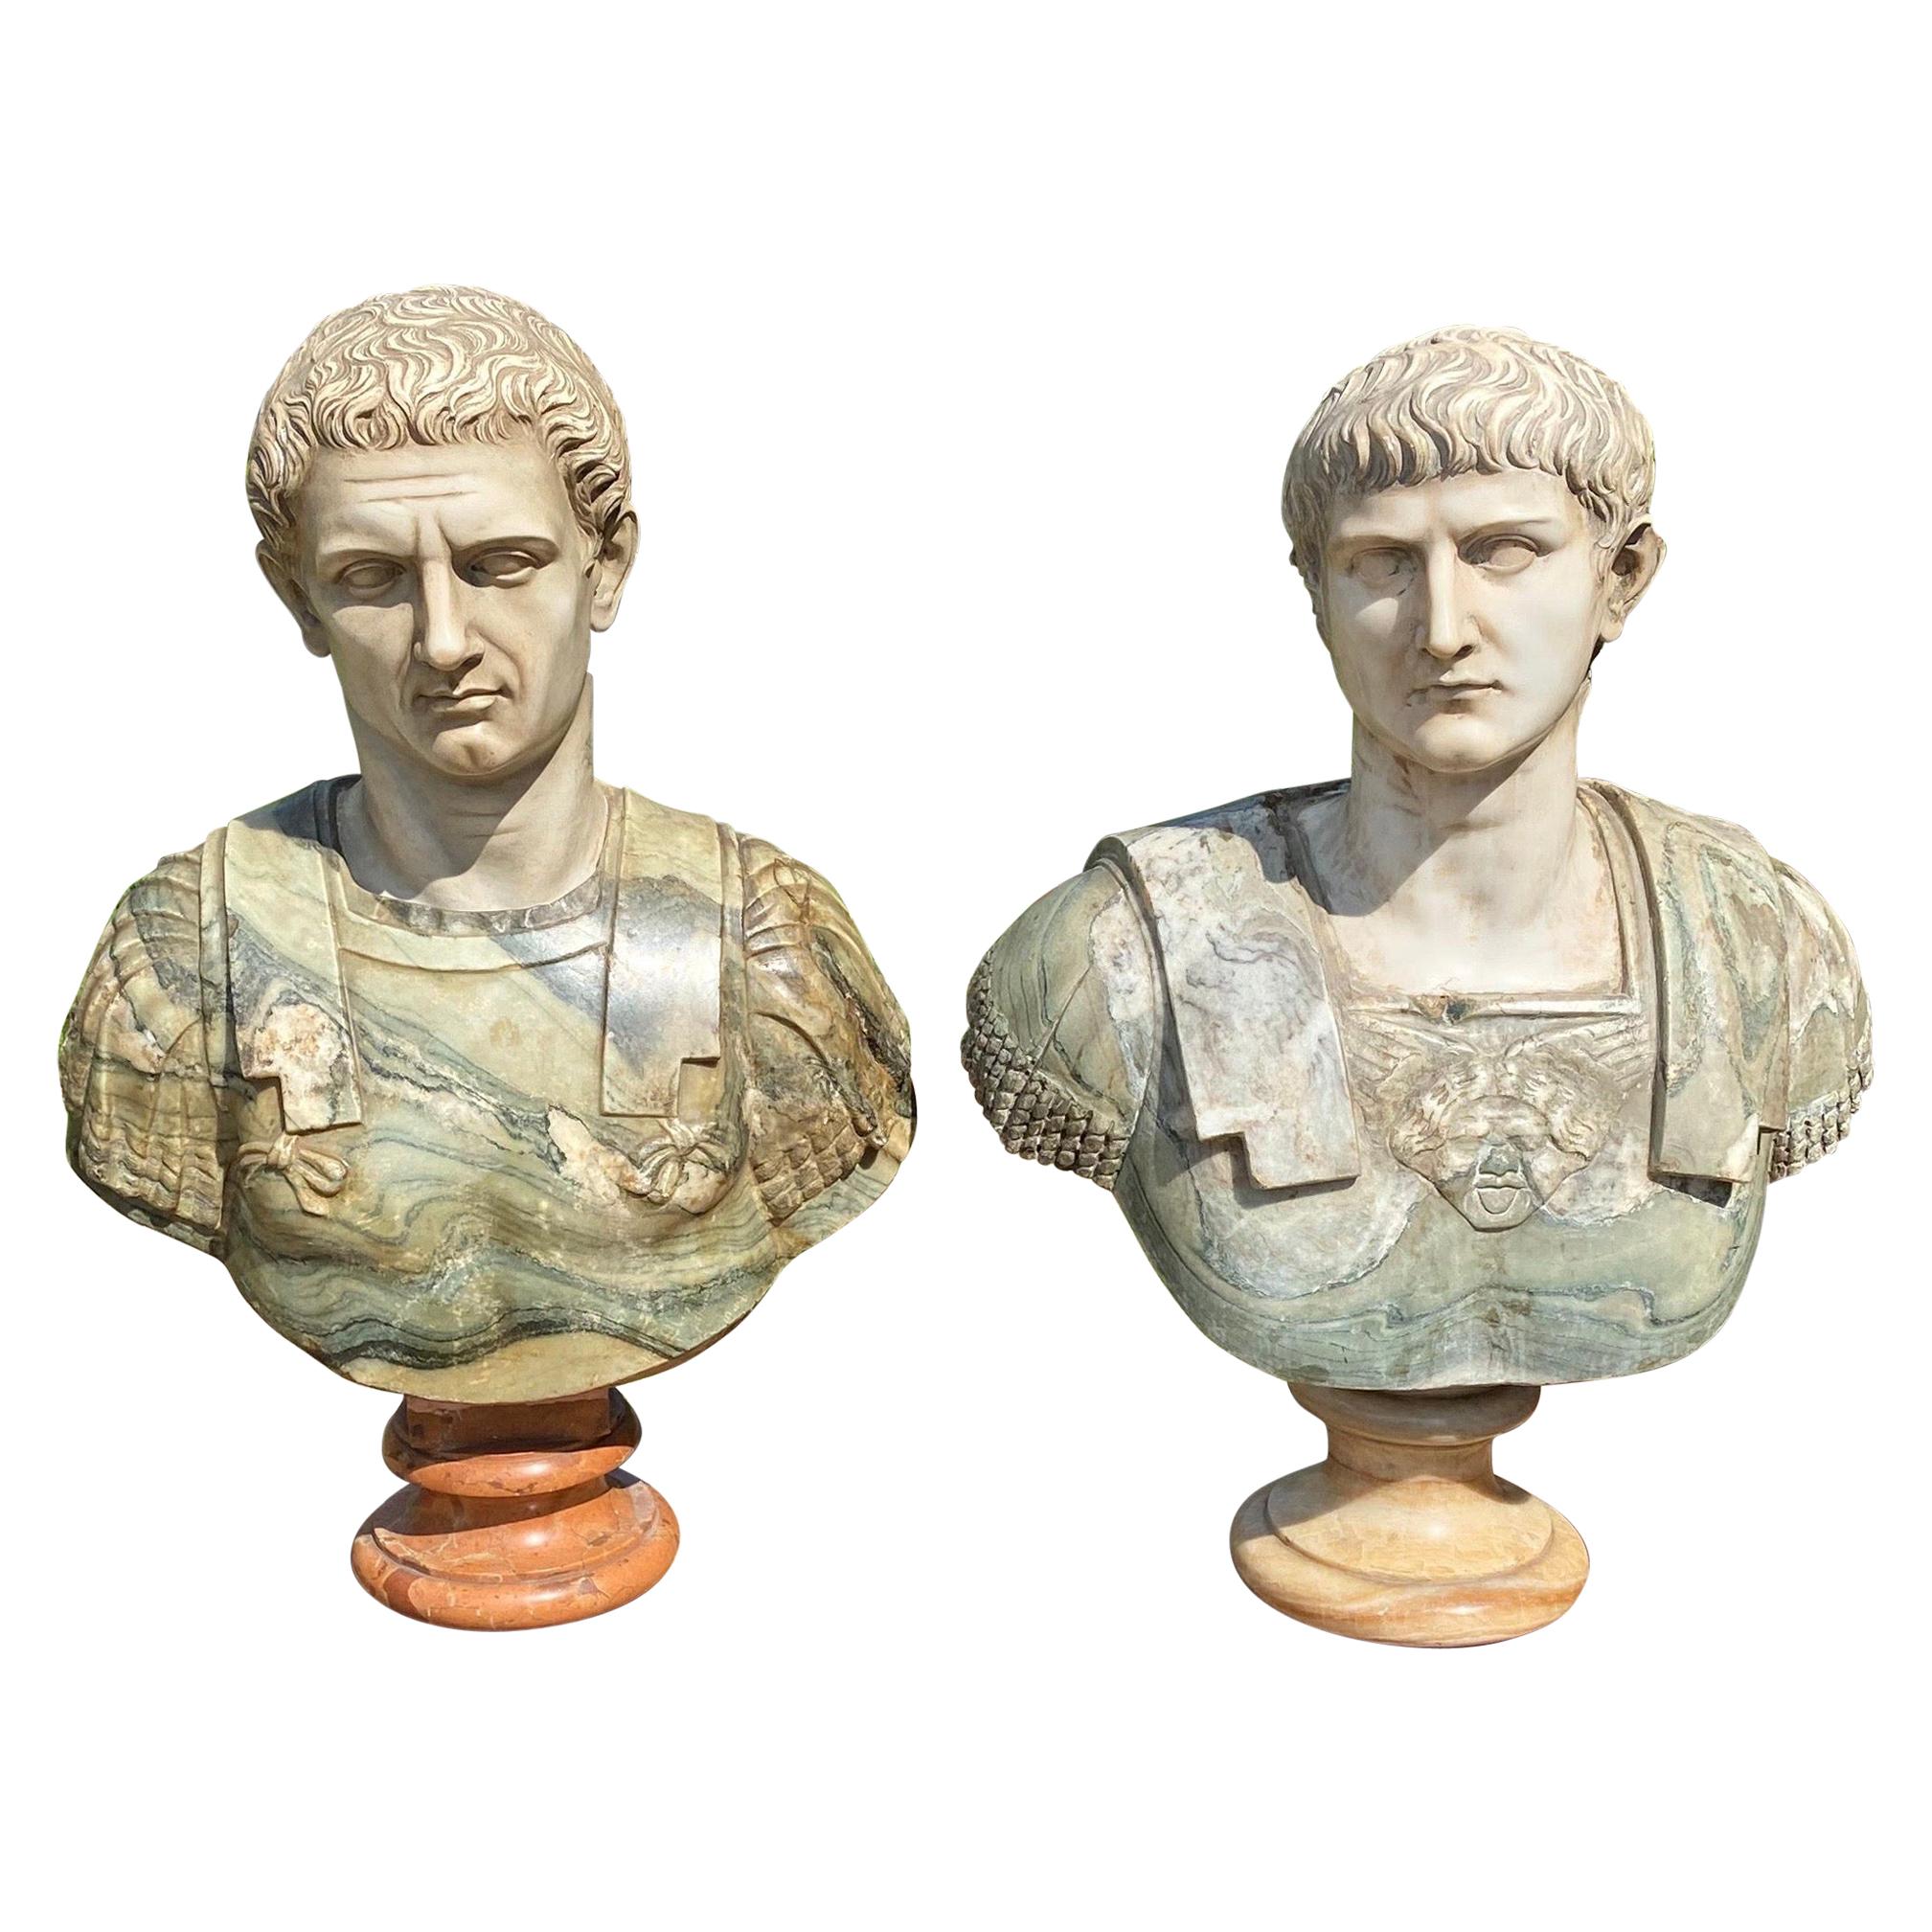 Bustes en marbre de style néoclassique italien du 19ème siècle représentant Caesars